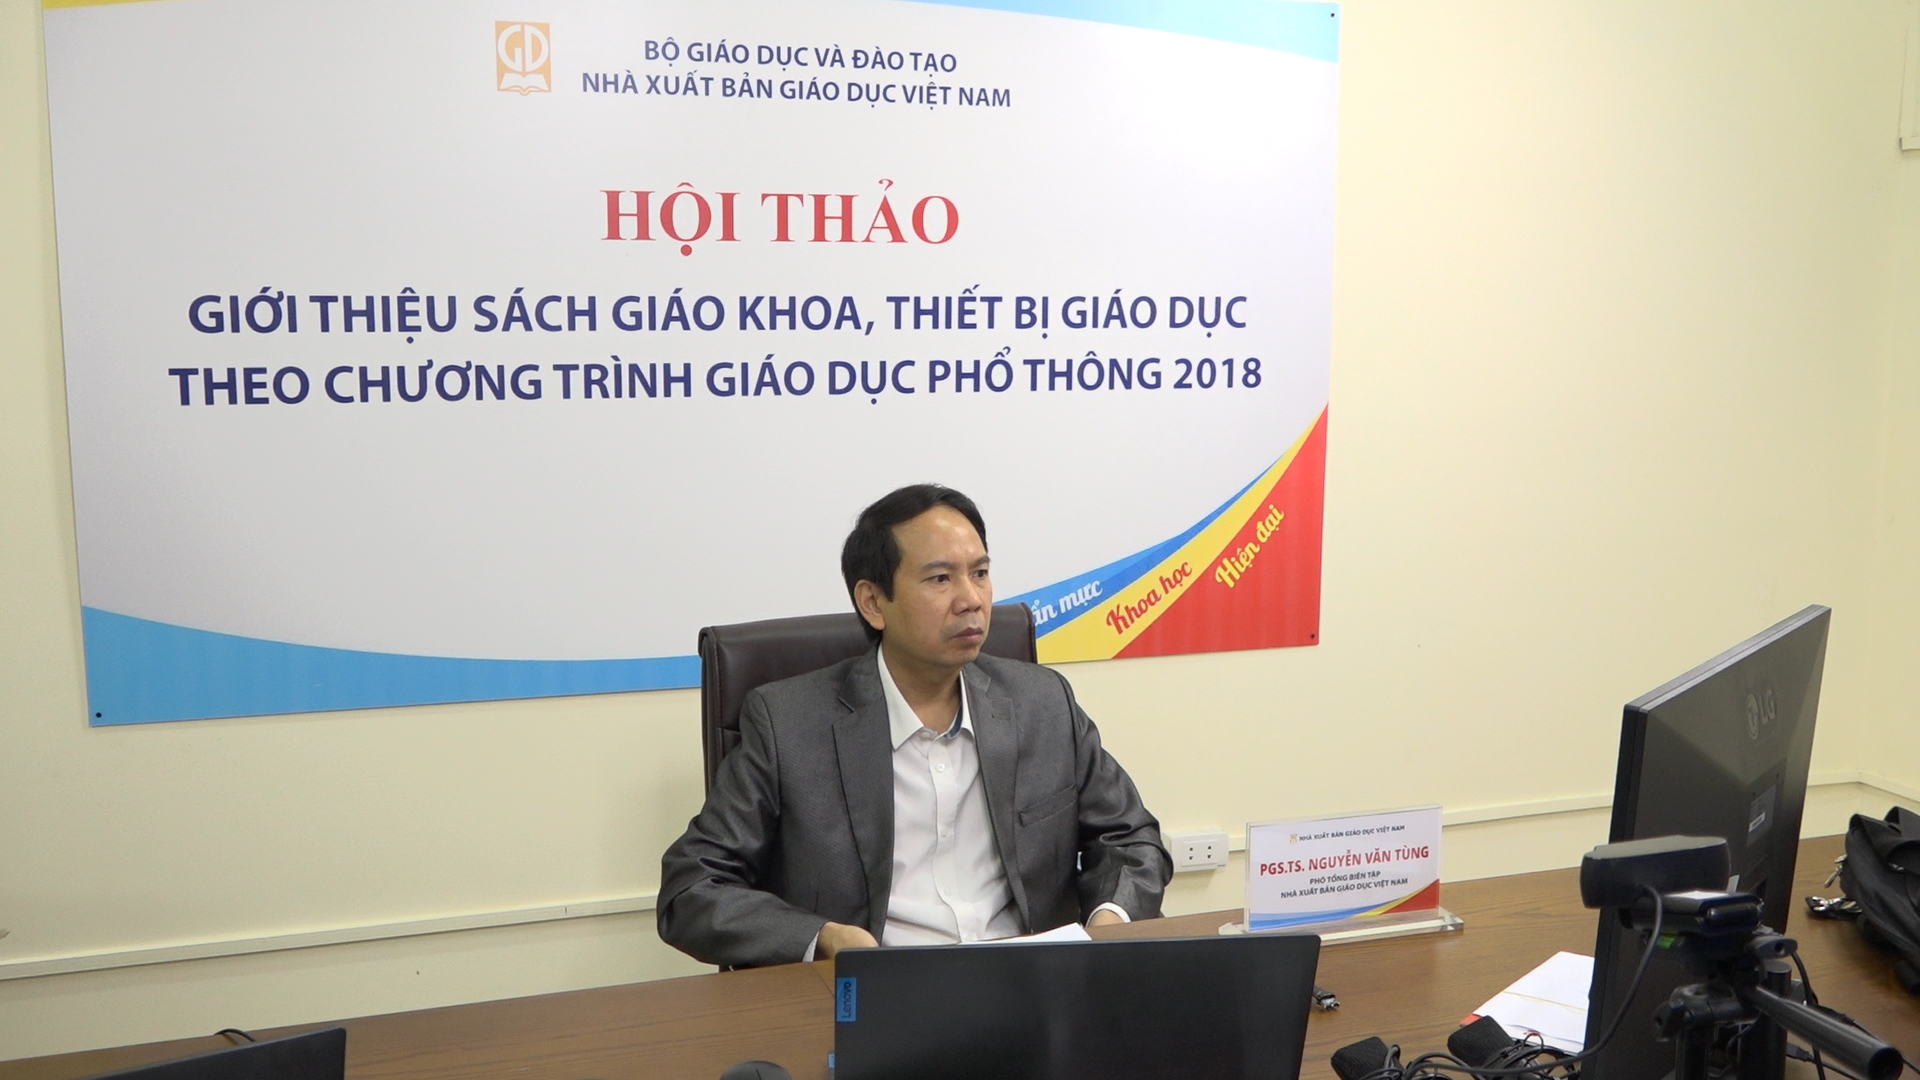 Nhà xuất bản Giáo dục Việt Nam ưu tiên giới thiệu SGK theo hình thức trực tuyến